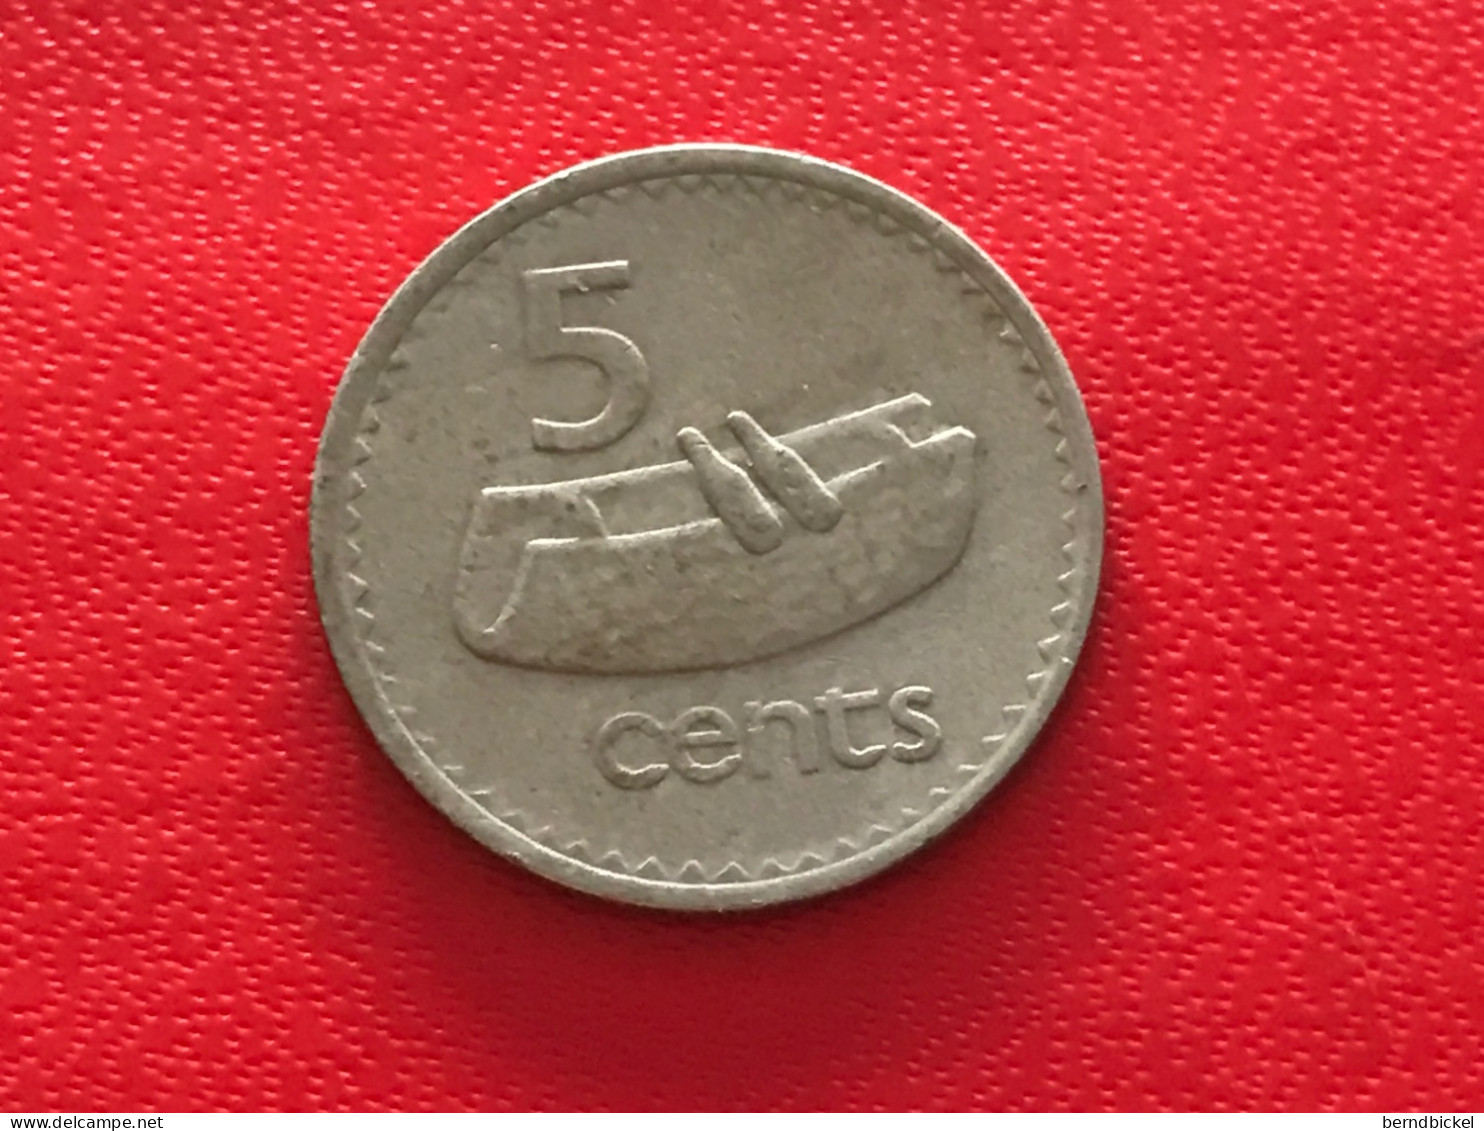 Münze Münzen Umlaufmünze Fiji 5 Cents 1975 - Fiji